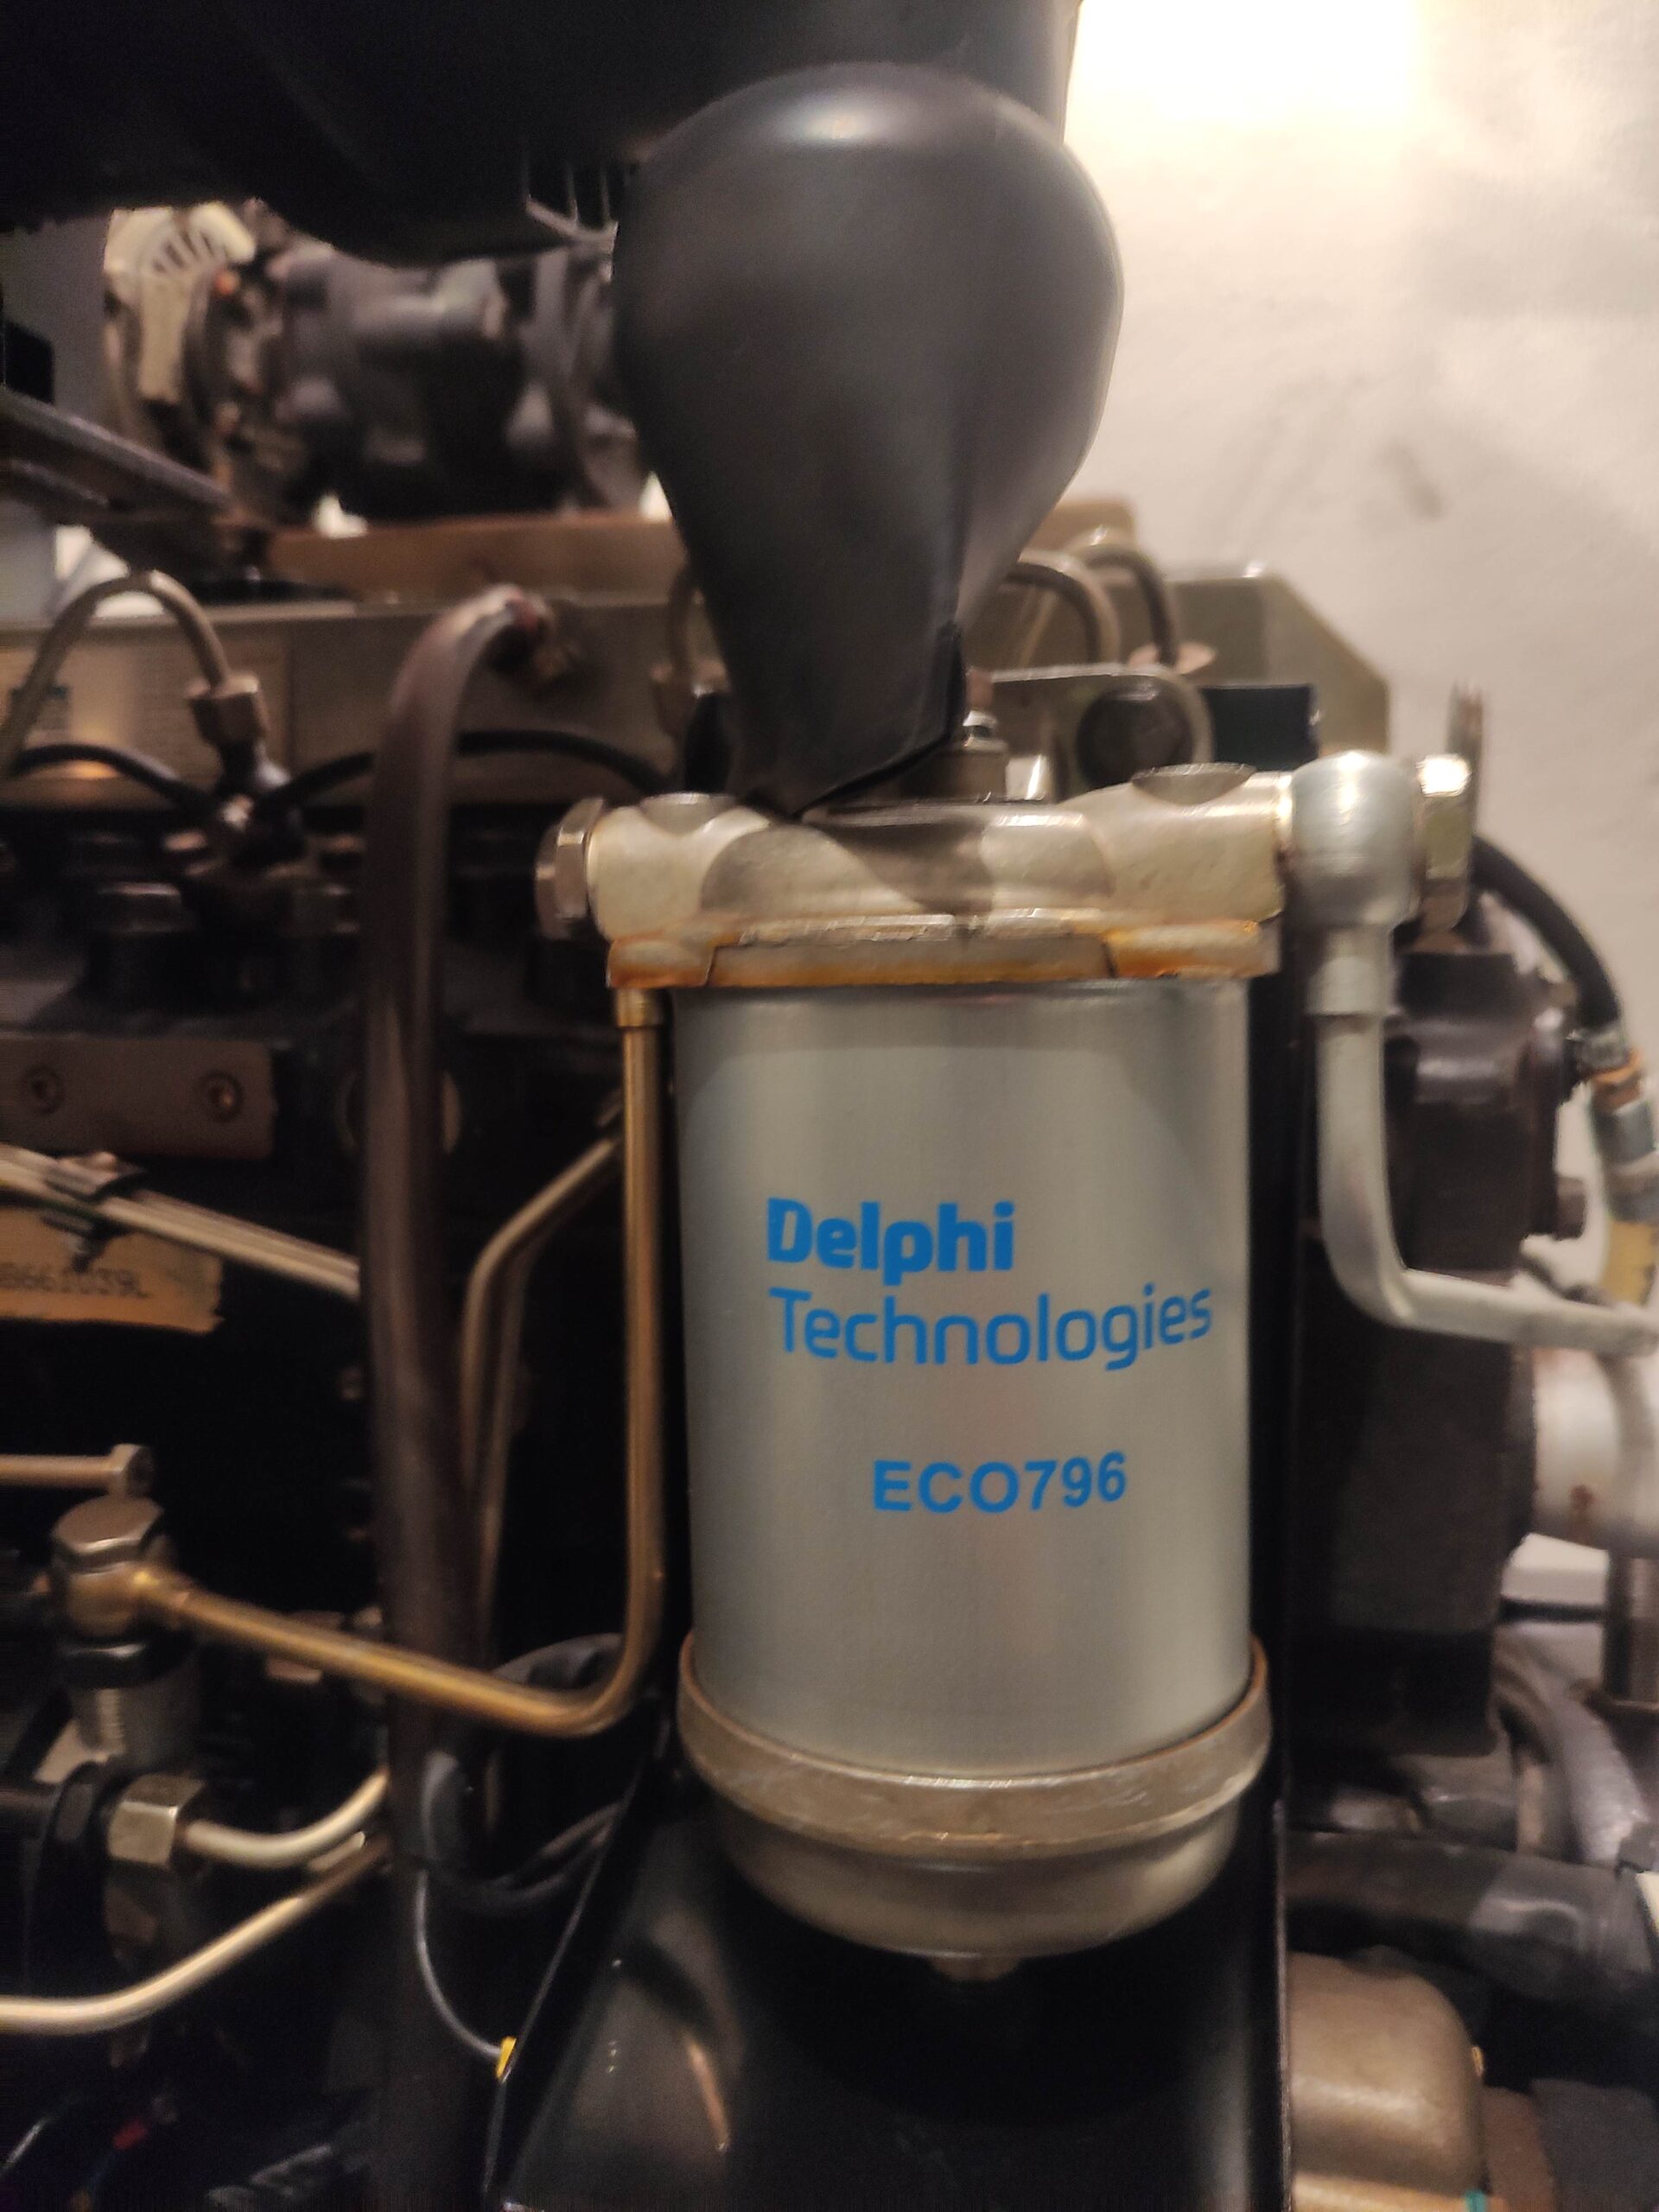 Delphi HDF796 Filtro combustible